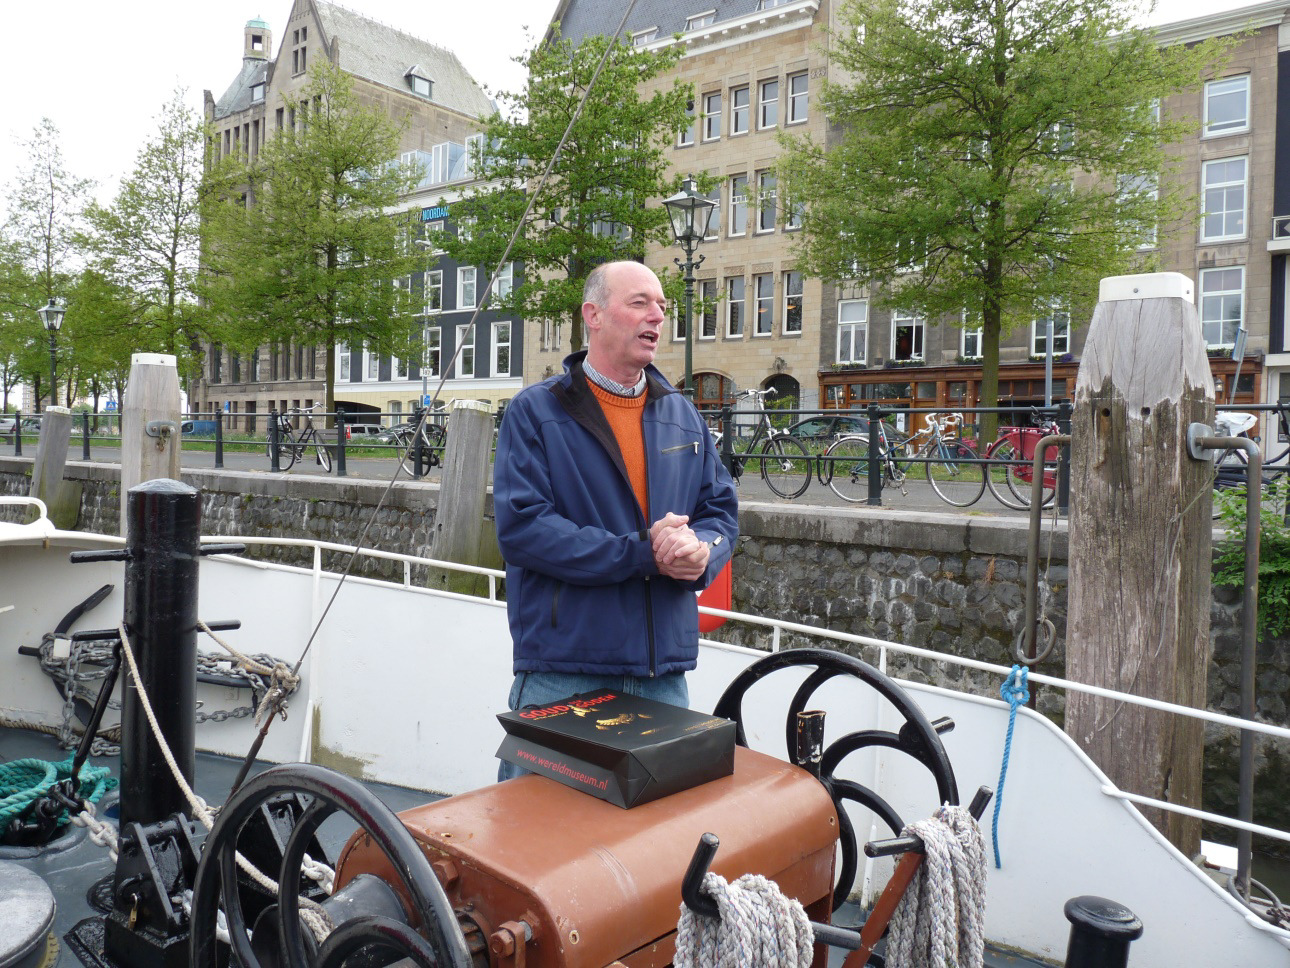 Via het IJsselmeer en Enkhuizen, waar werd overnacht bij het KNRM-station en het Amsterdam-Rijnkanaal ging het naar Streefkerk, waar in de jachthaven werd overnacht.